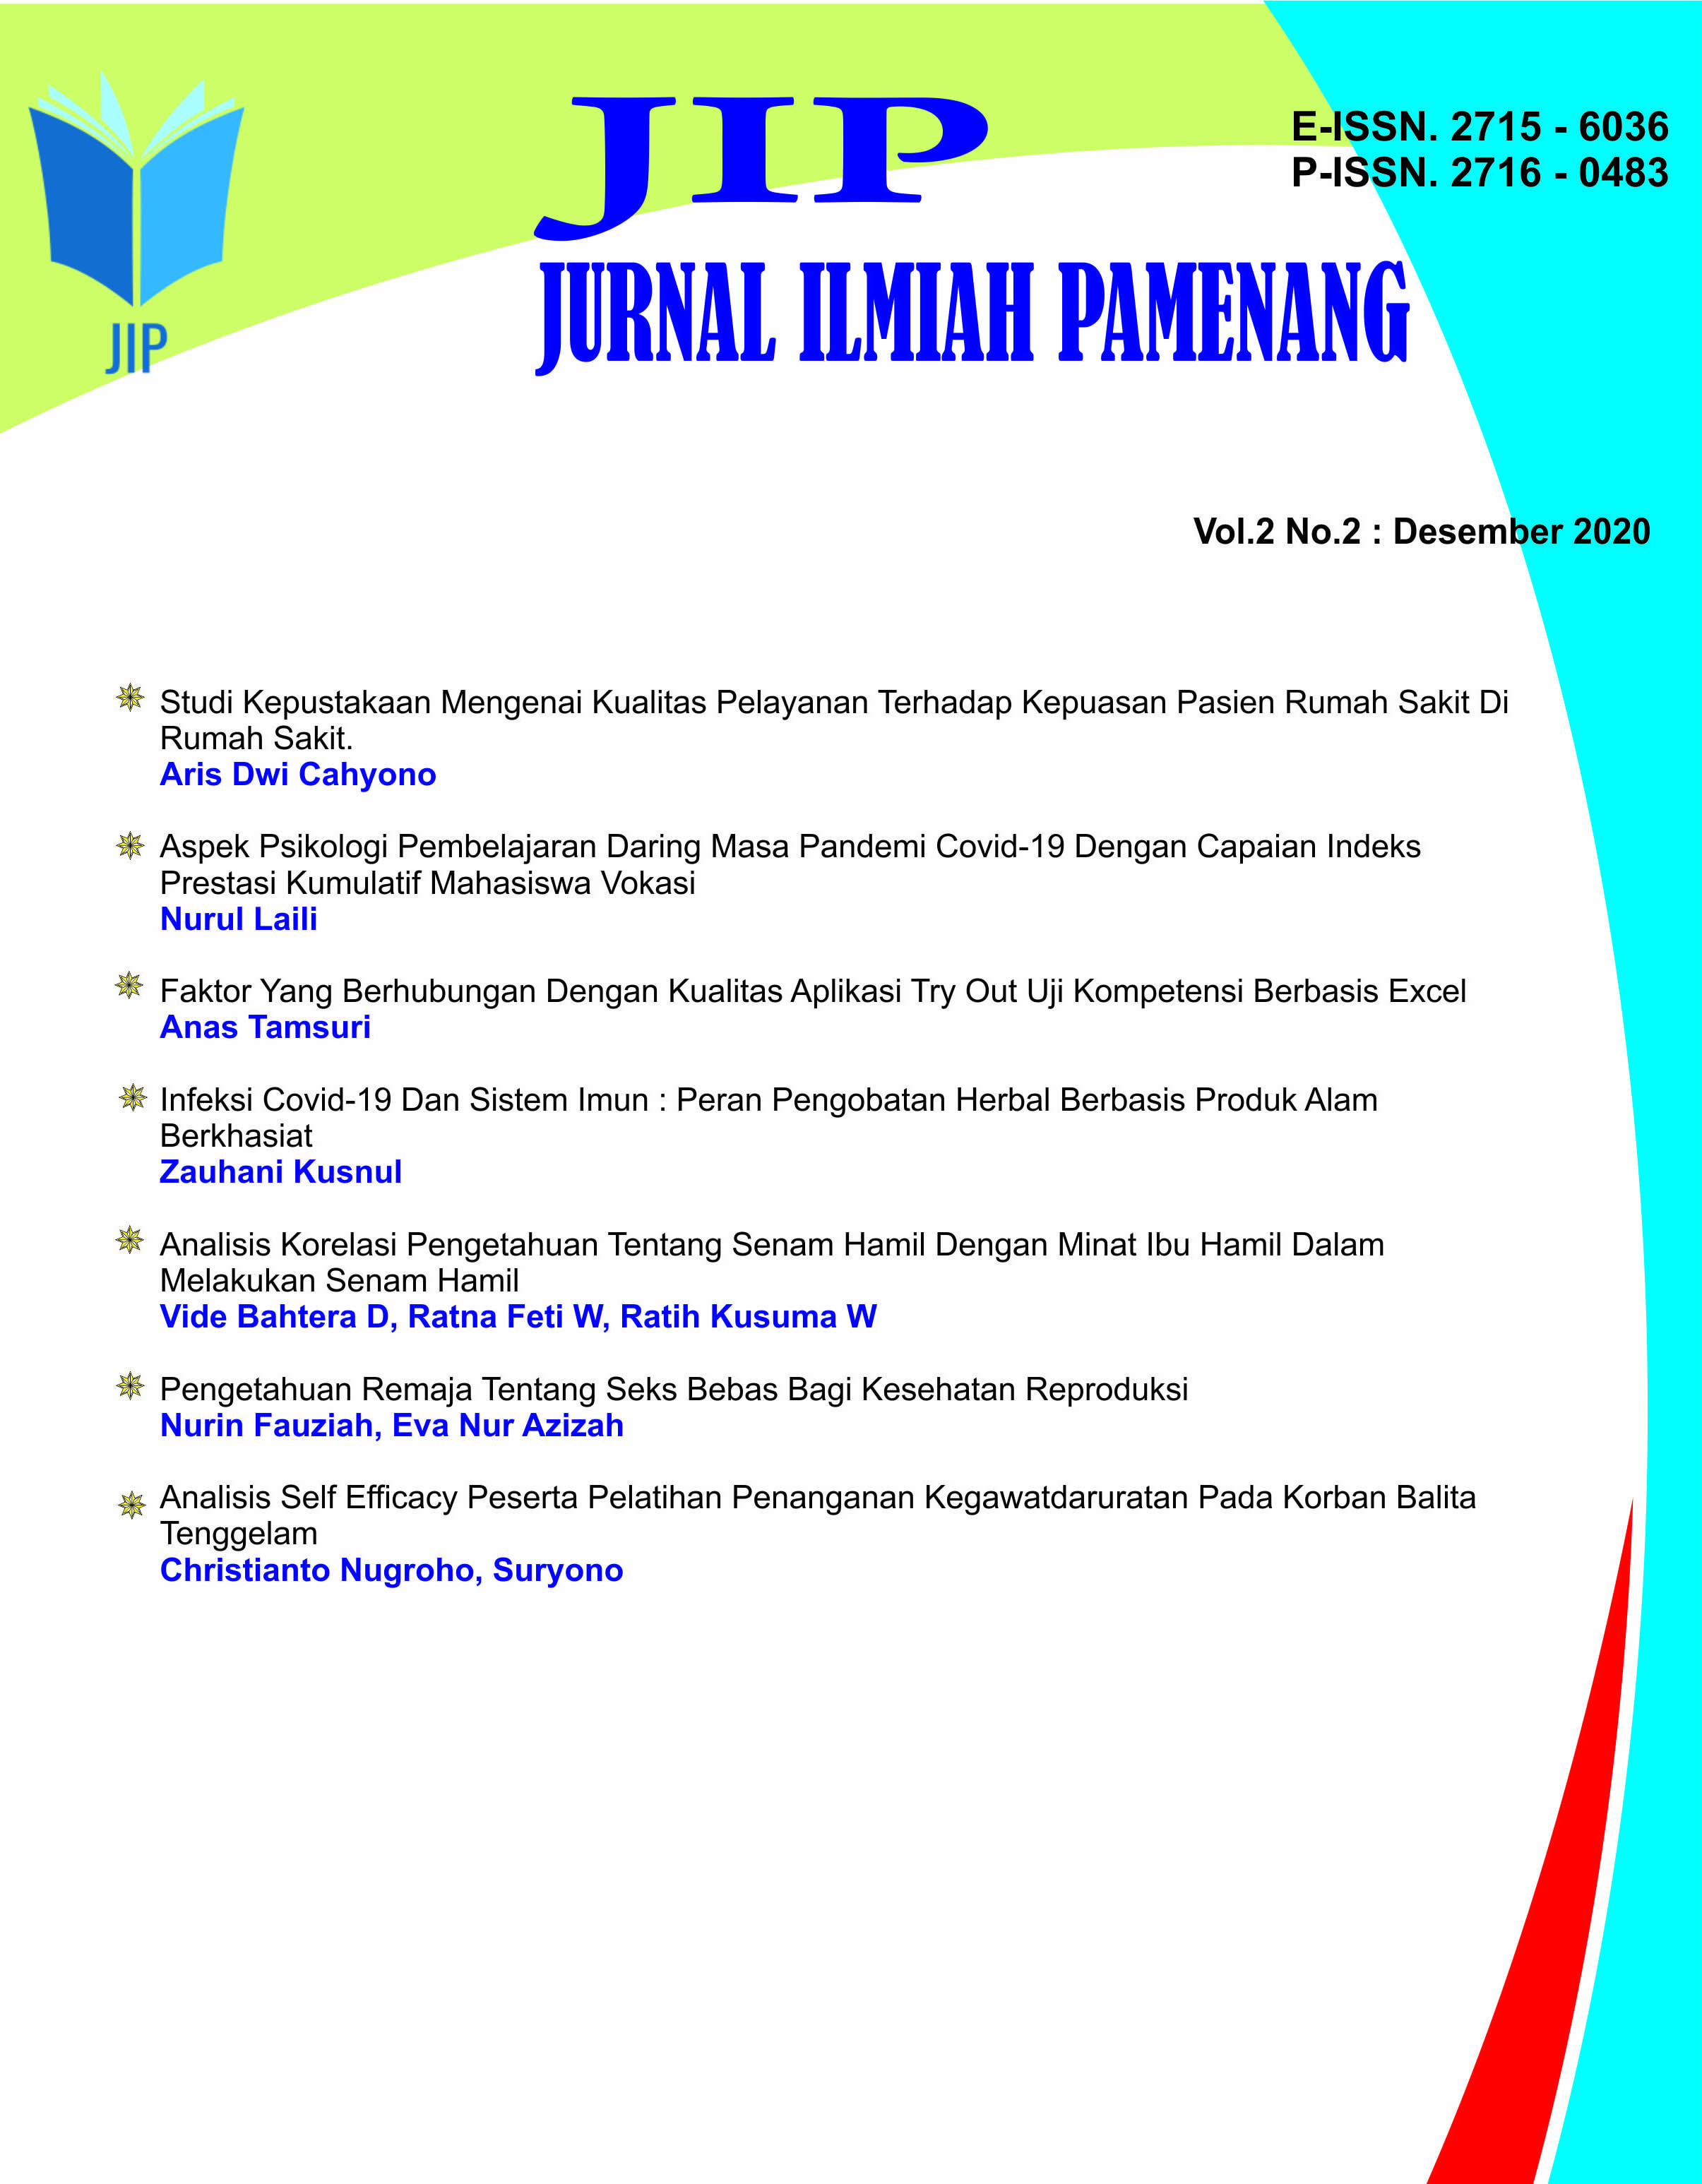 					View Vol. 2 No. 2 (2020): Jurnal Ilmiah Pamenang - JIP
				